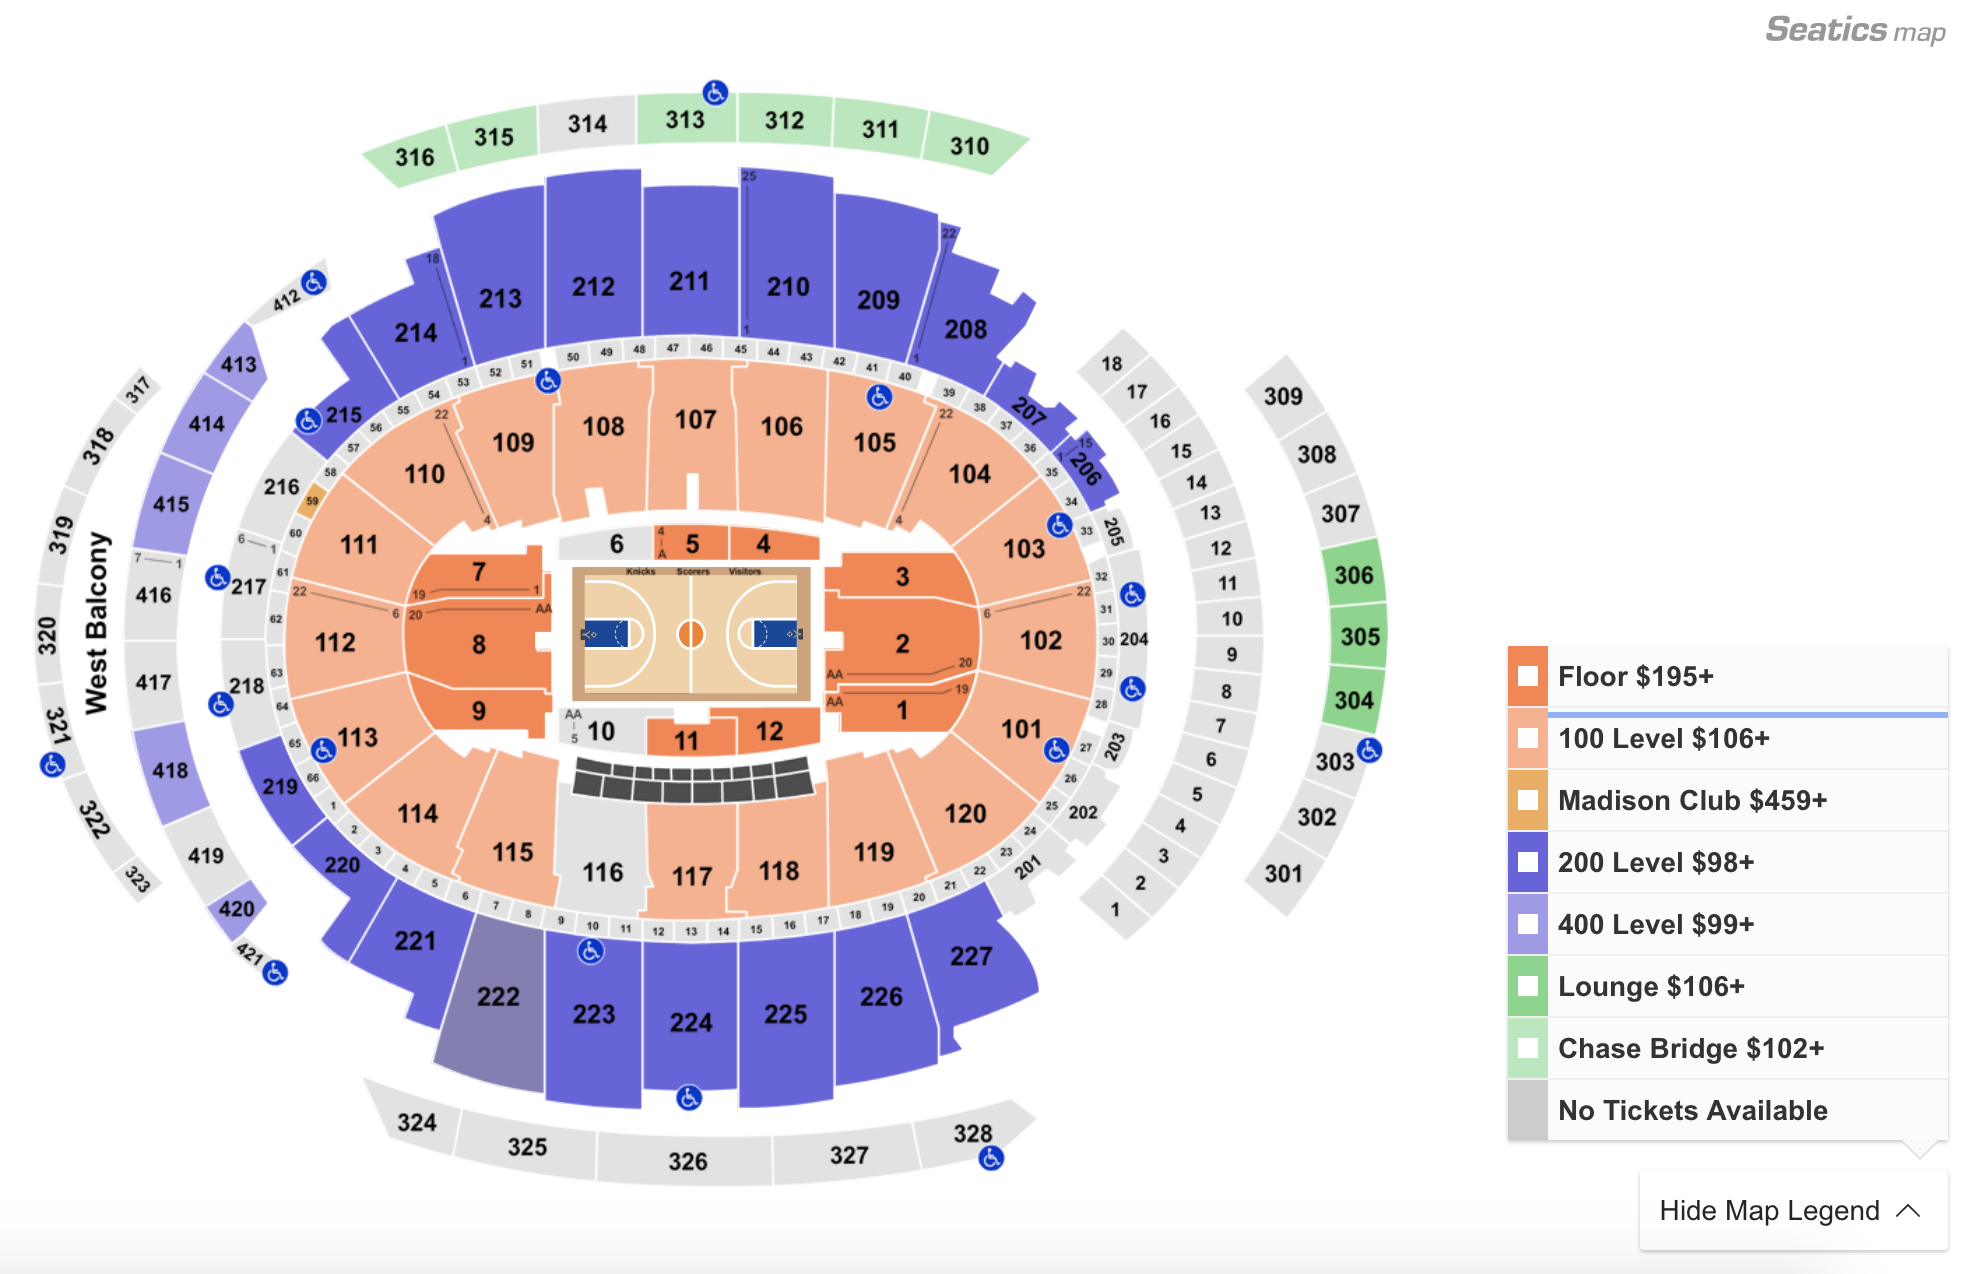 Dallas Mavericks Seating Chart With Rows